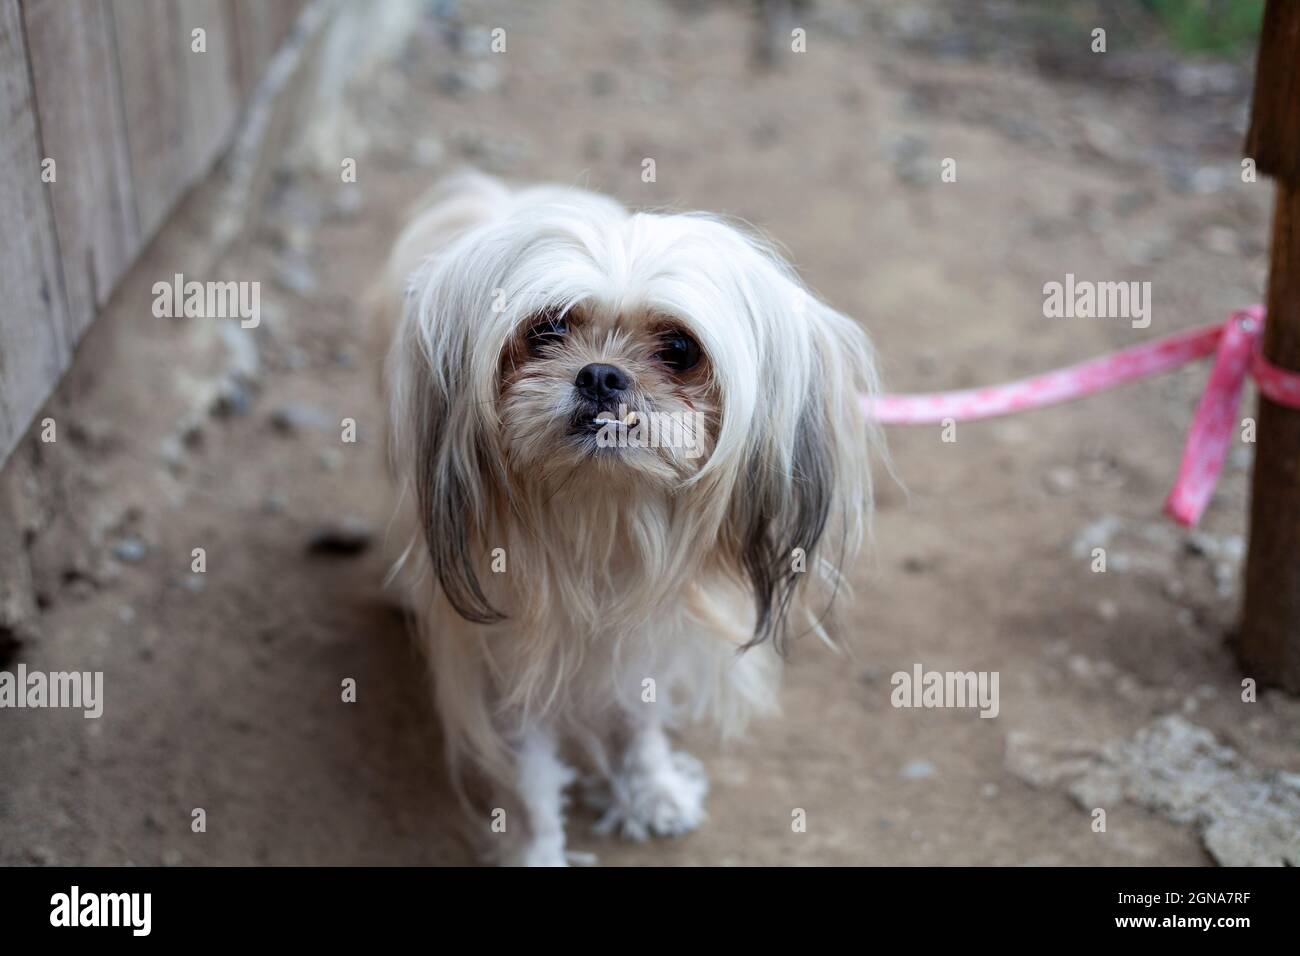 brutto cane piccolo su rosa guinzaglio cucciolo cane doggy capelli bianchi Foto Stock